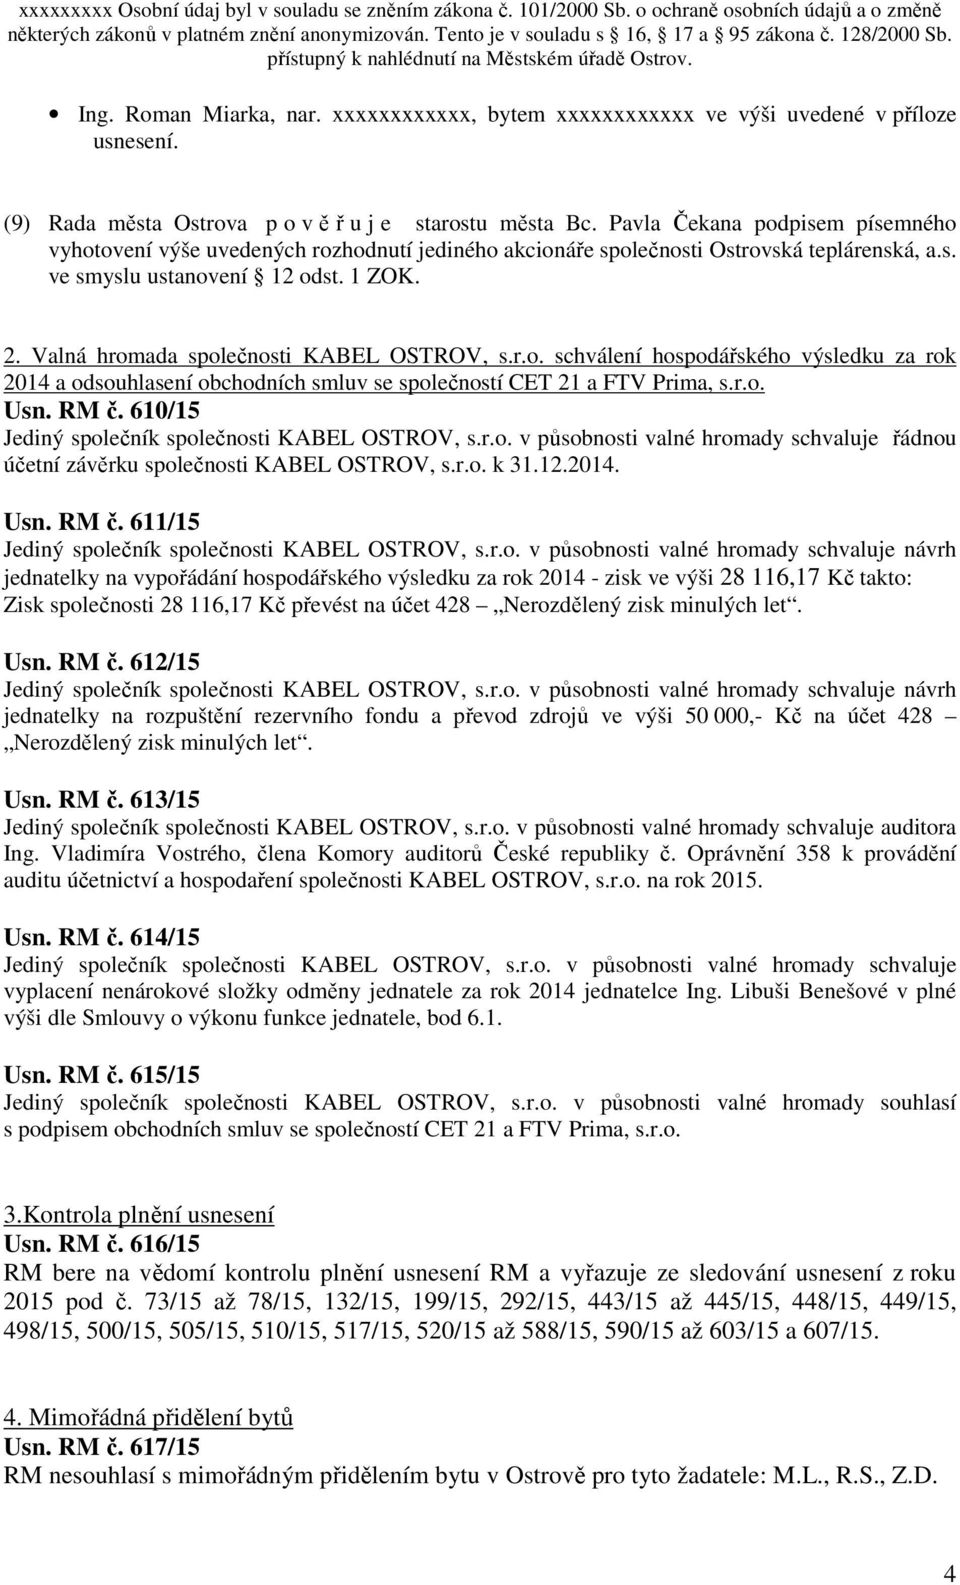 Valná hromada společnosti KABEL OSTROV, s.r.o. schválení hospodářského výsledku za rok 2014 a odsouhlasení obchodních smluv se společností CET 21 a FTV Prima, s.r.o. Usn. RM č.